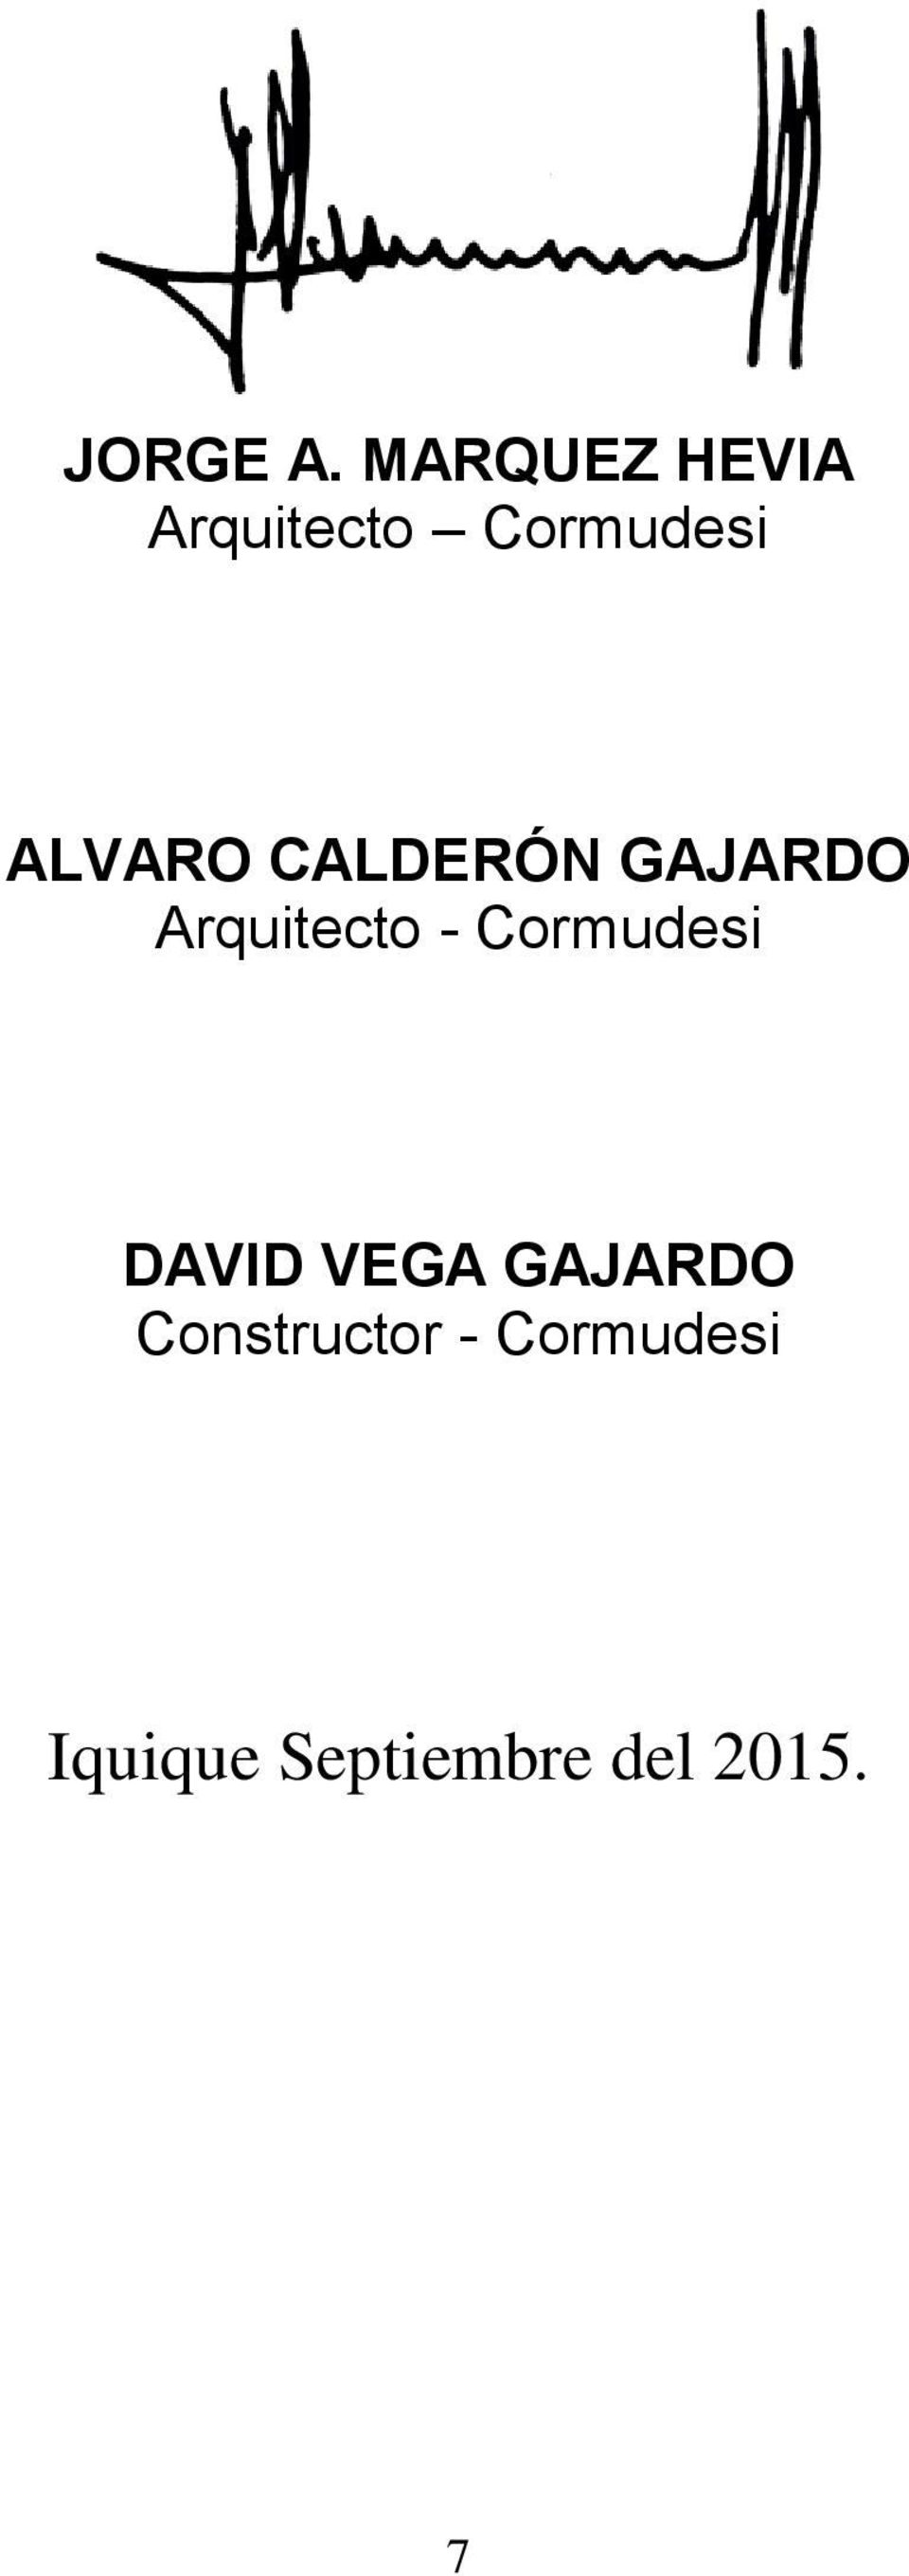 ALVARO CALDERÓN GAJARDO Arquitecto -